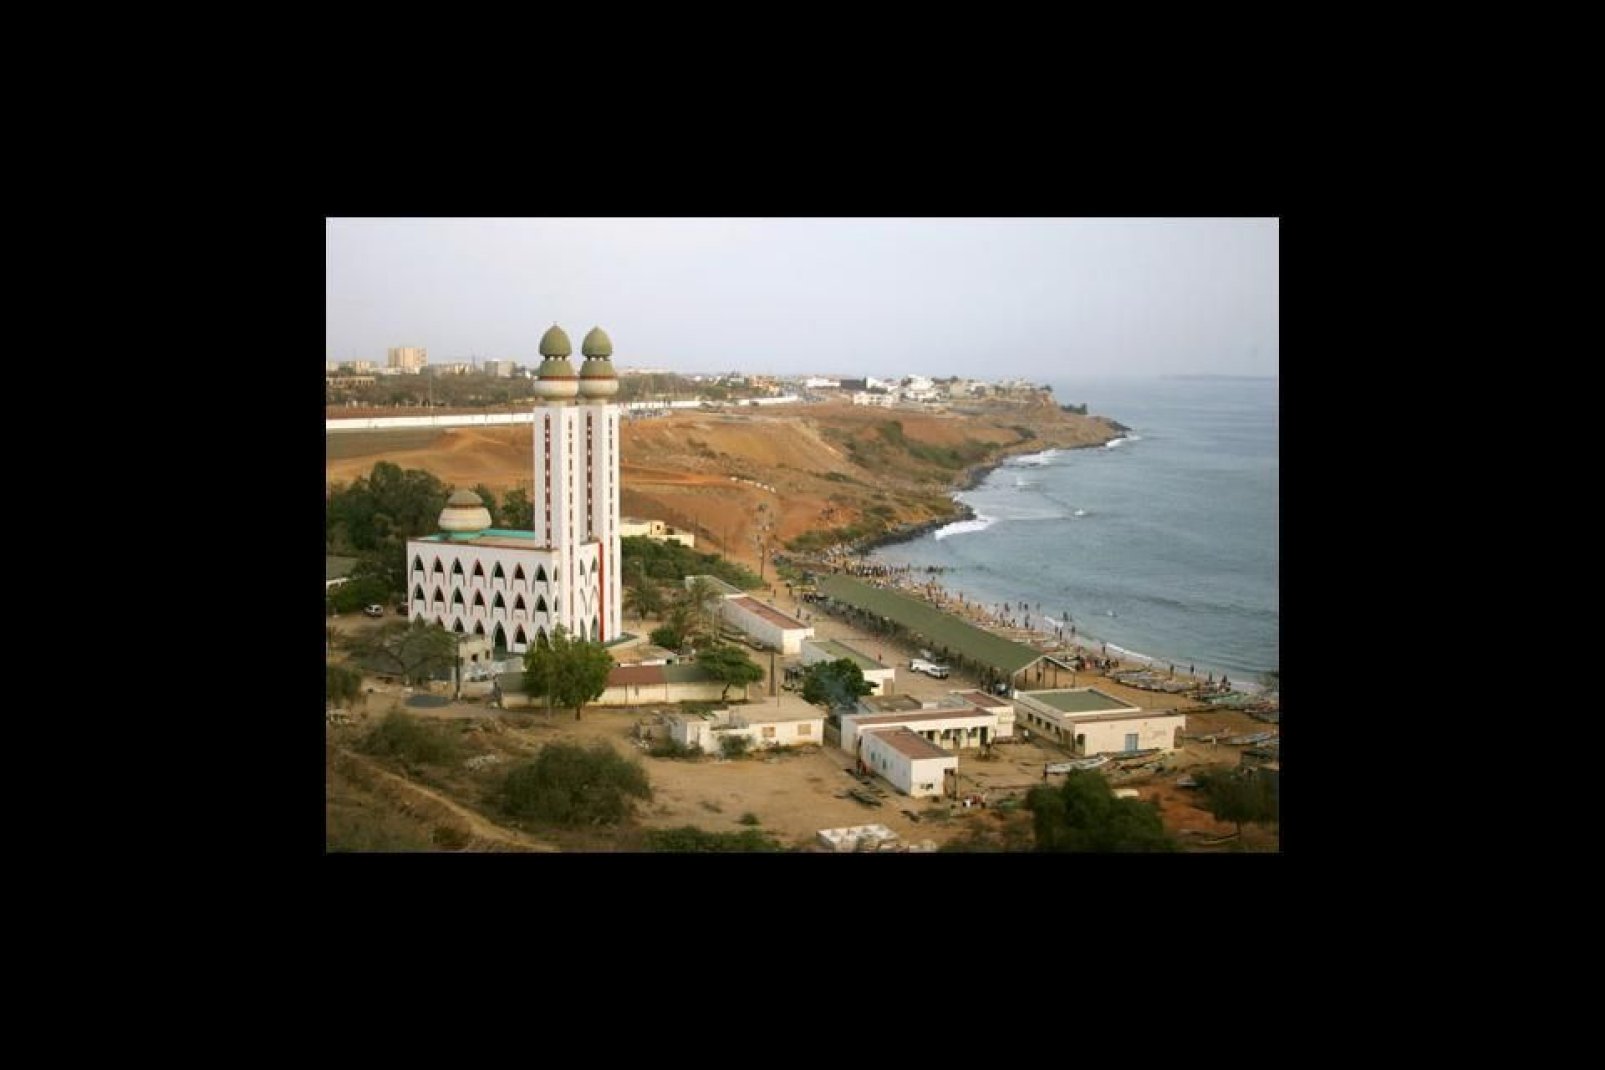 La Grande Moschea di Dakar è uno degli edifici pù alti della capitale